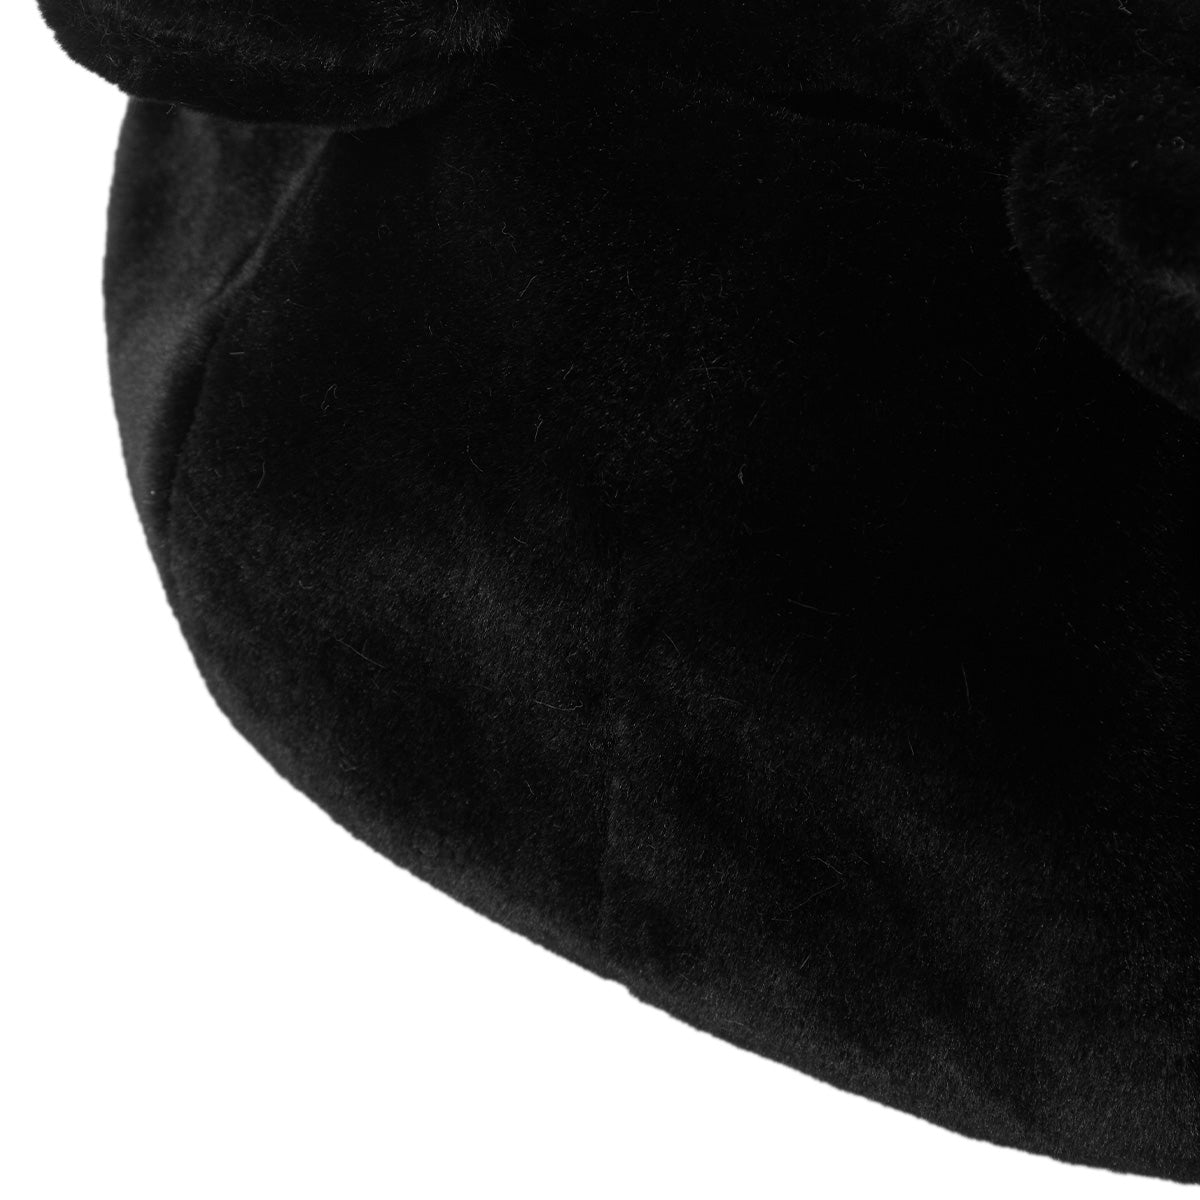 Kakazzy Ushanka Hat Black